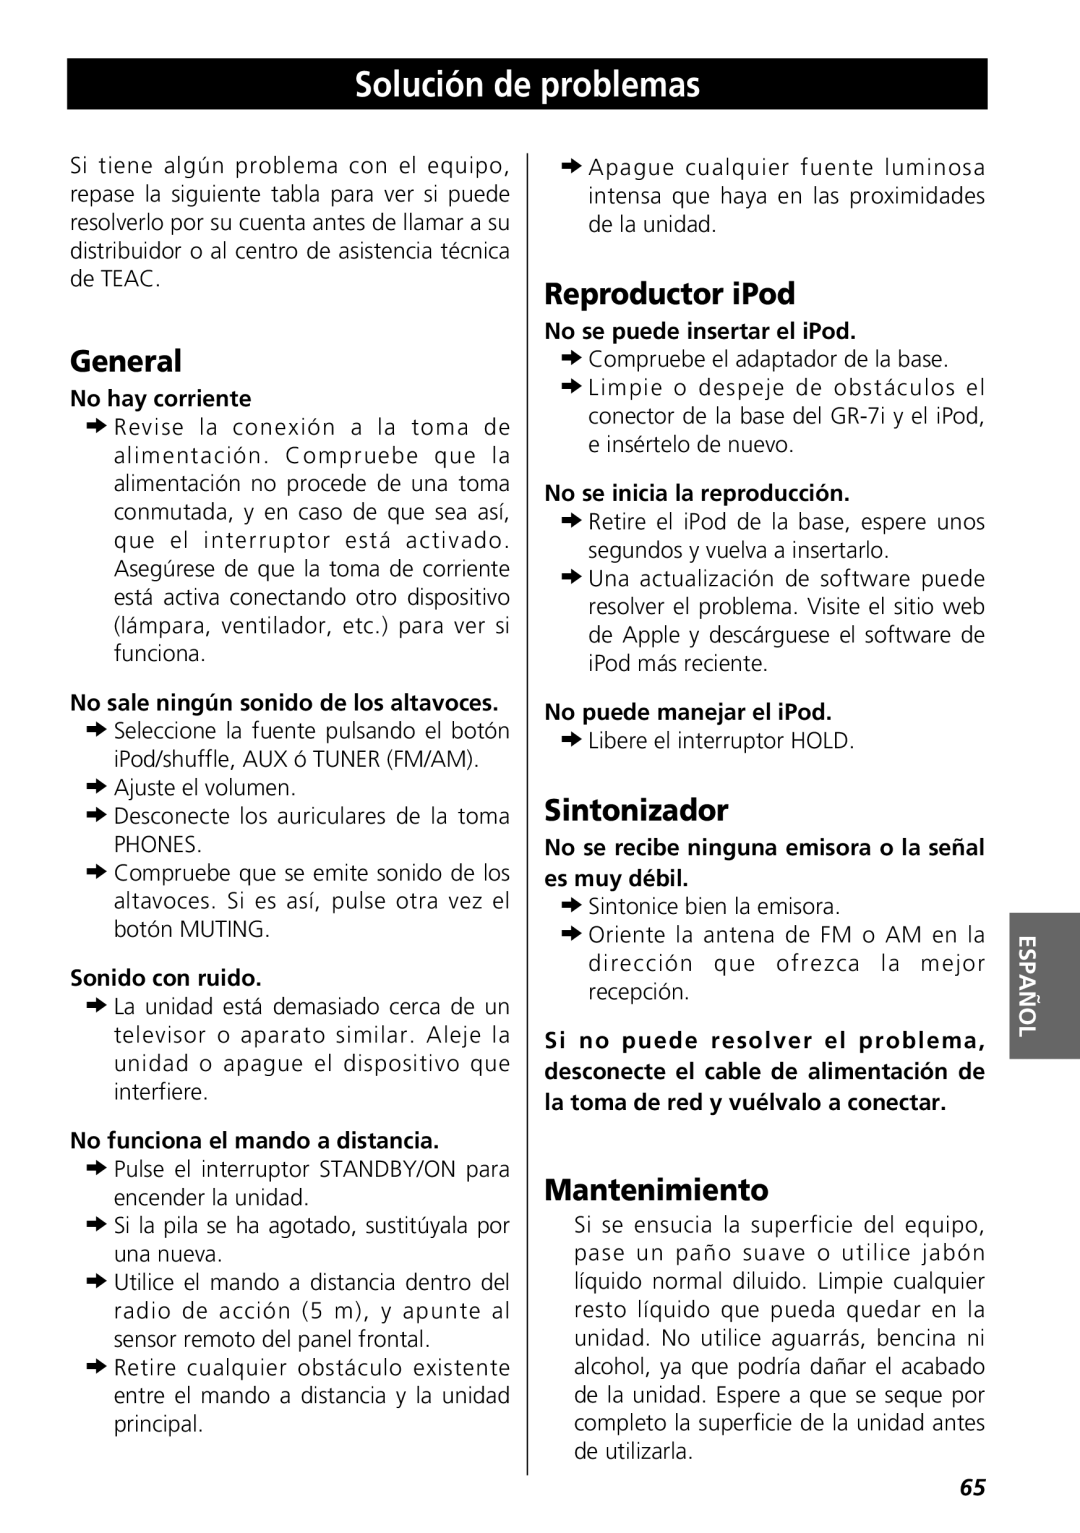 Teac GR-7i owner manual Solución de problemas, Reproductor iPod, Sintonizador, Mantenimiento, General 